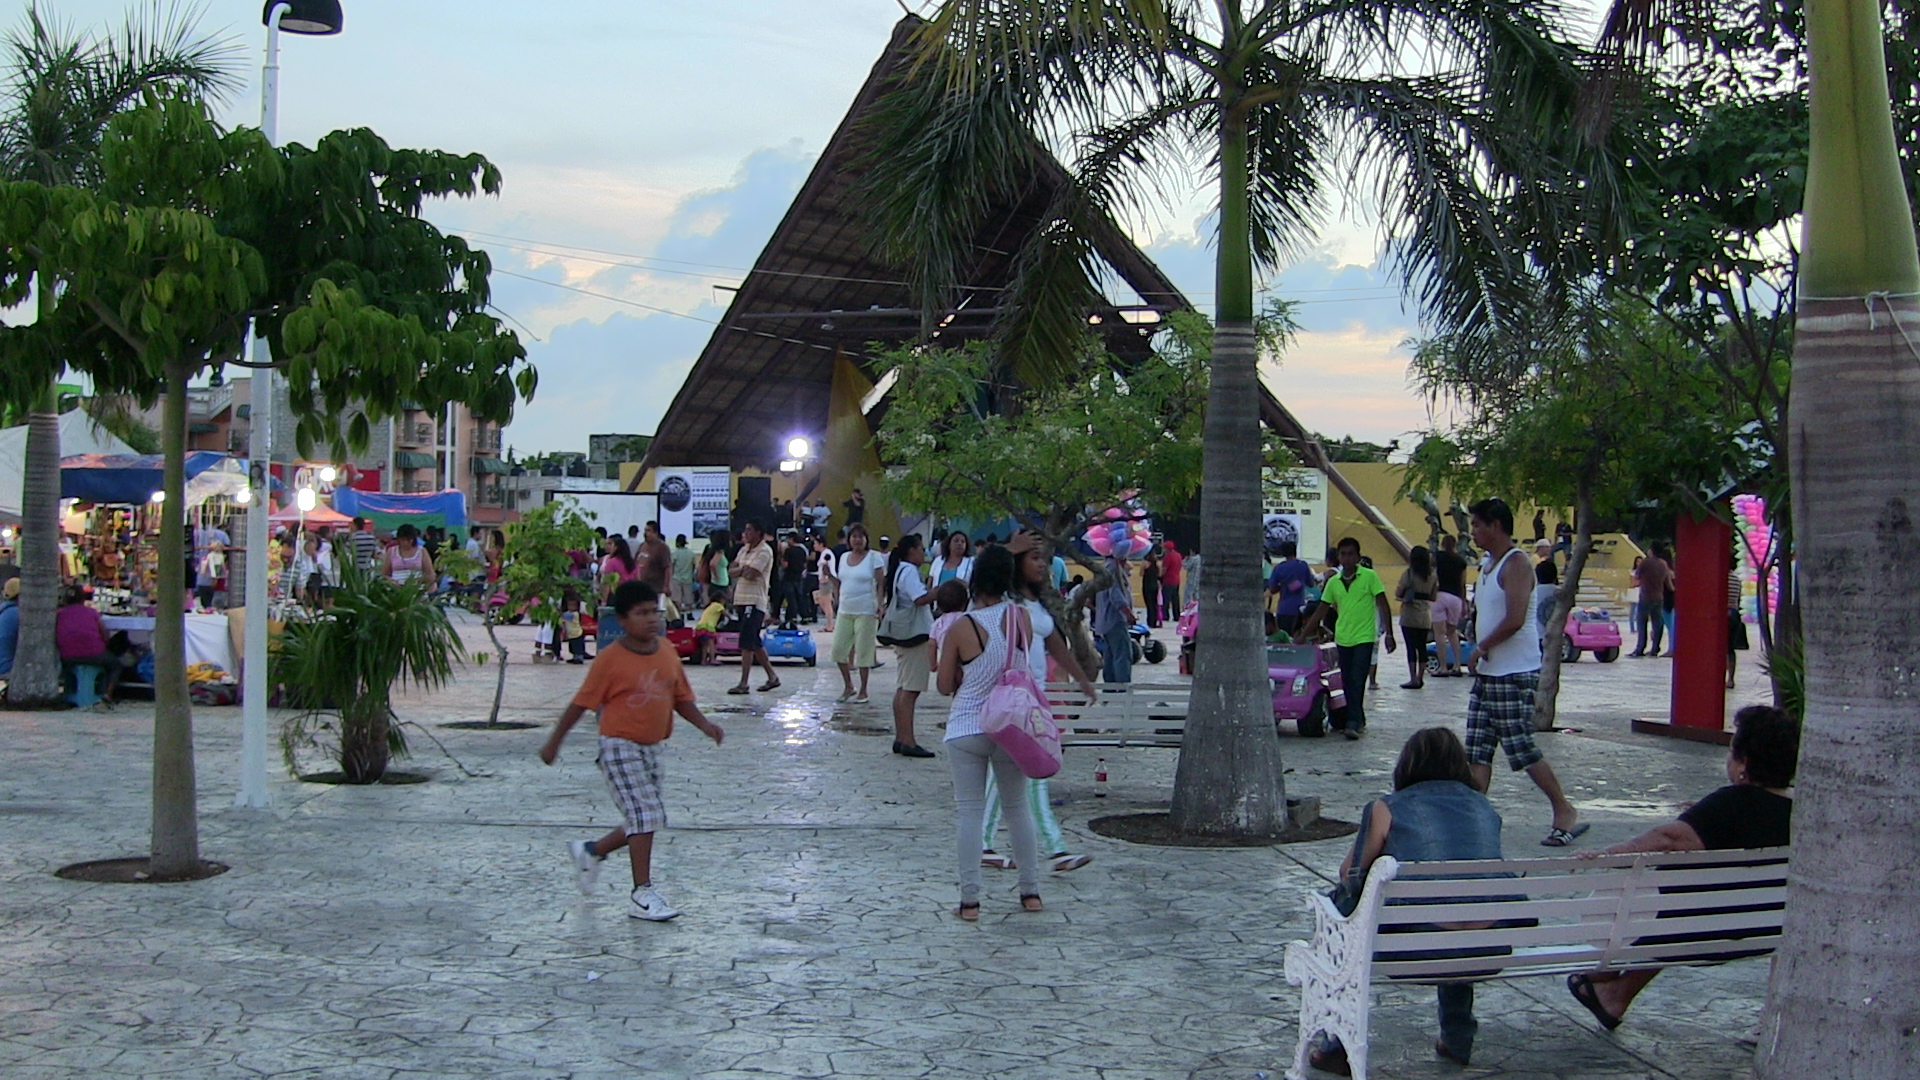 Parque Las Palapas in Cancun